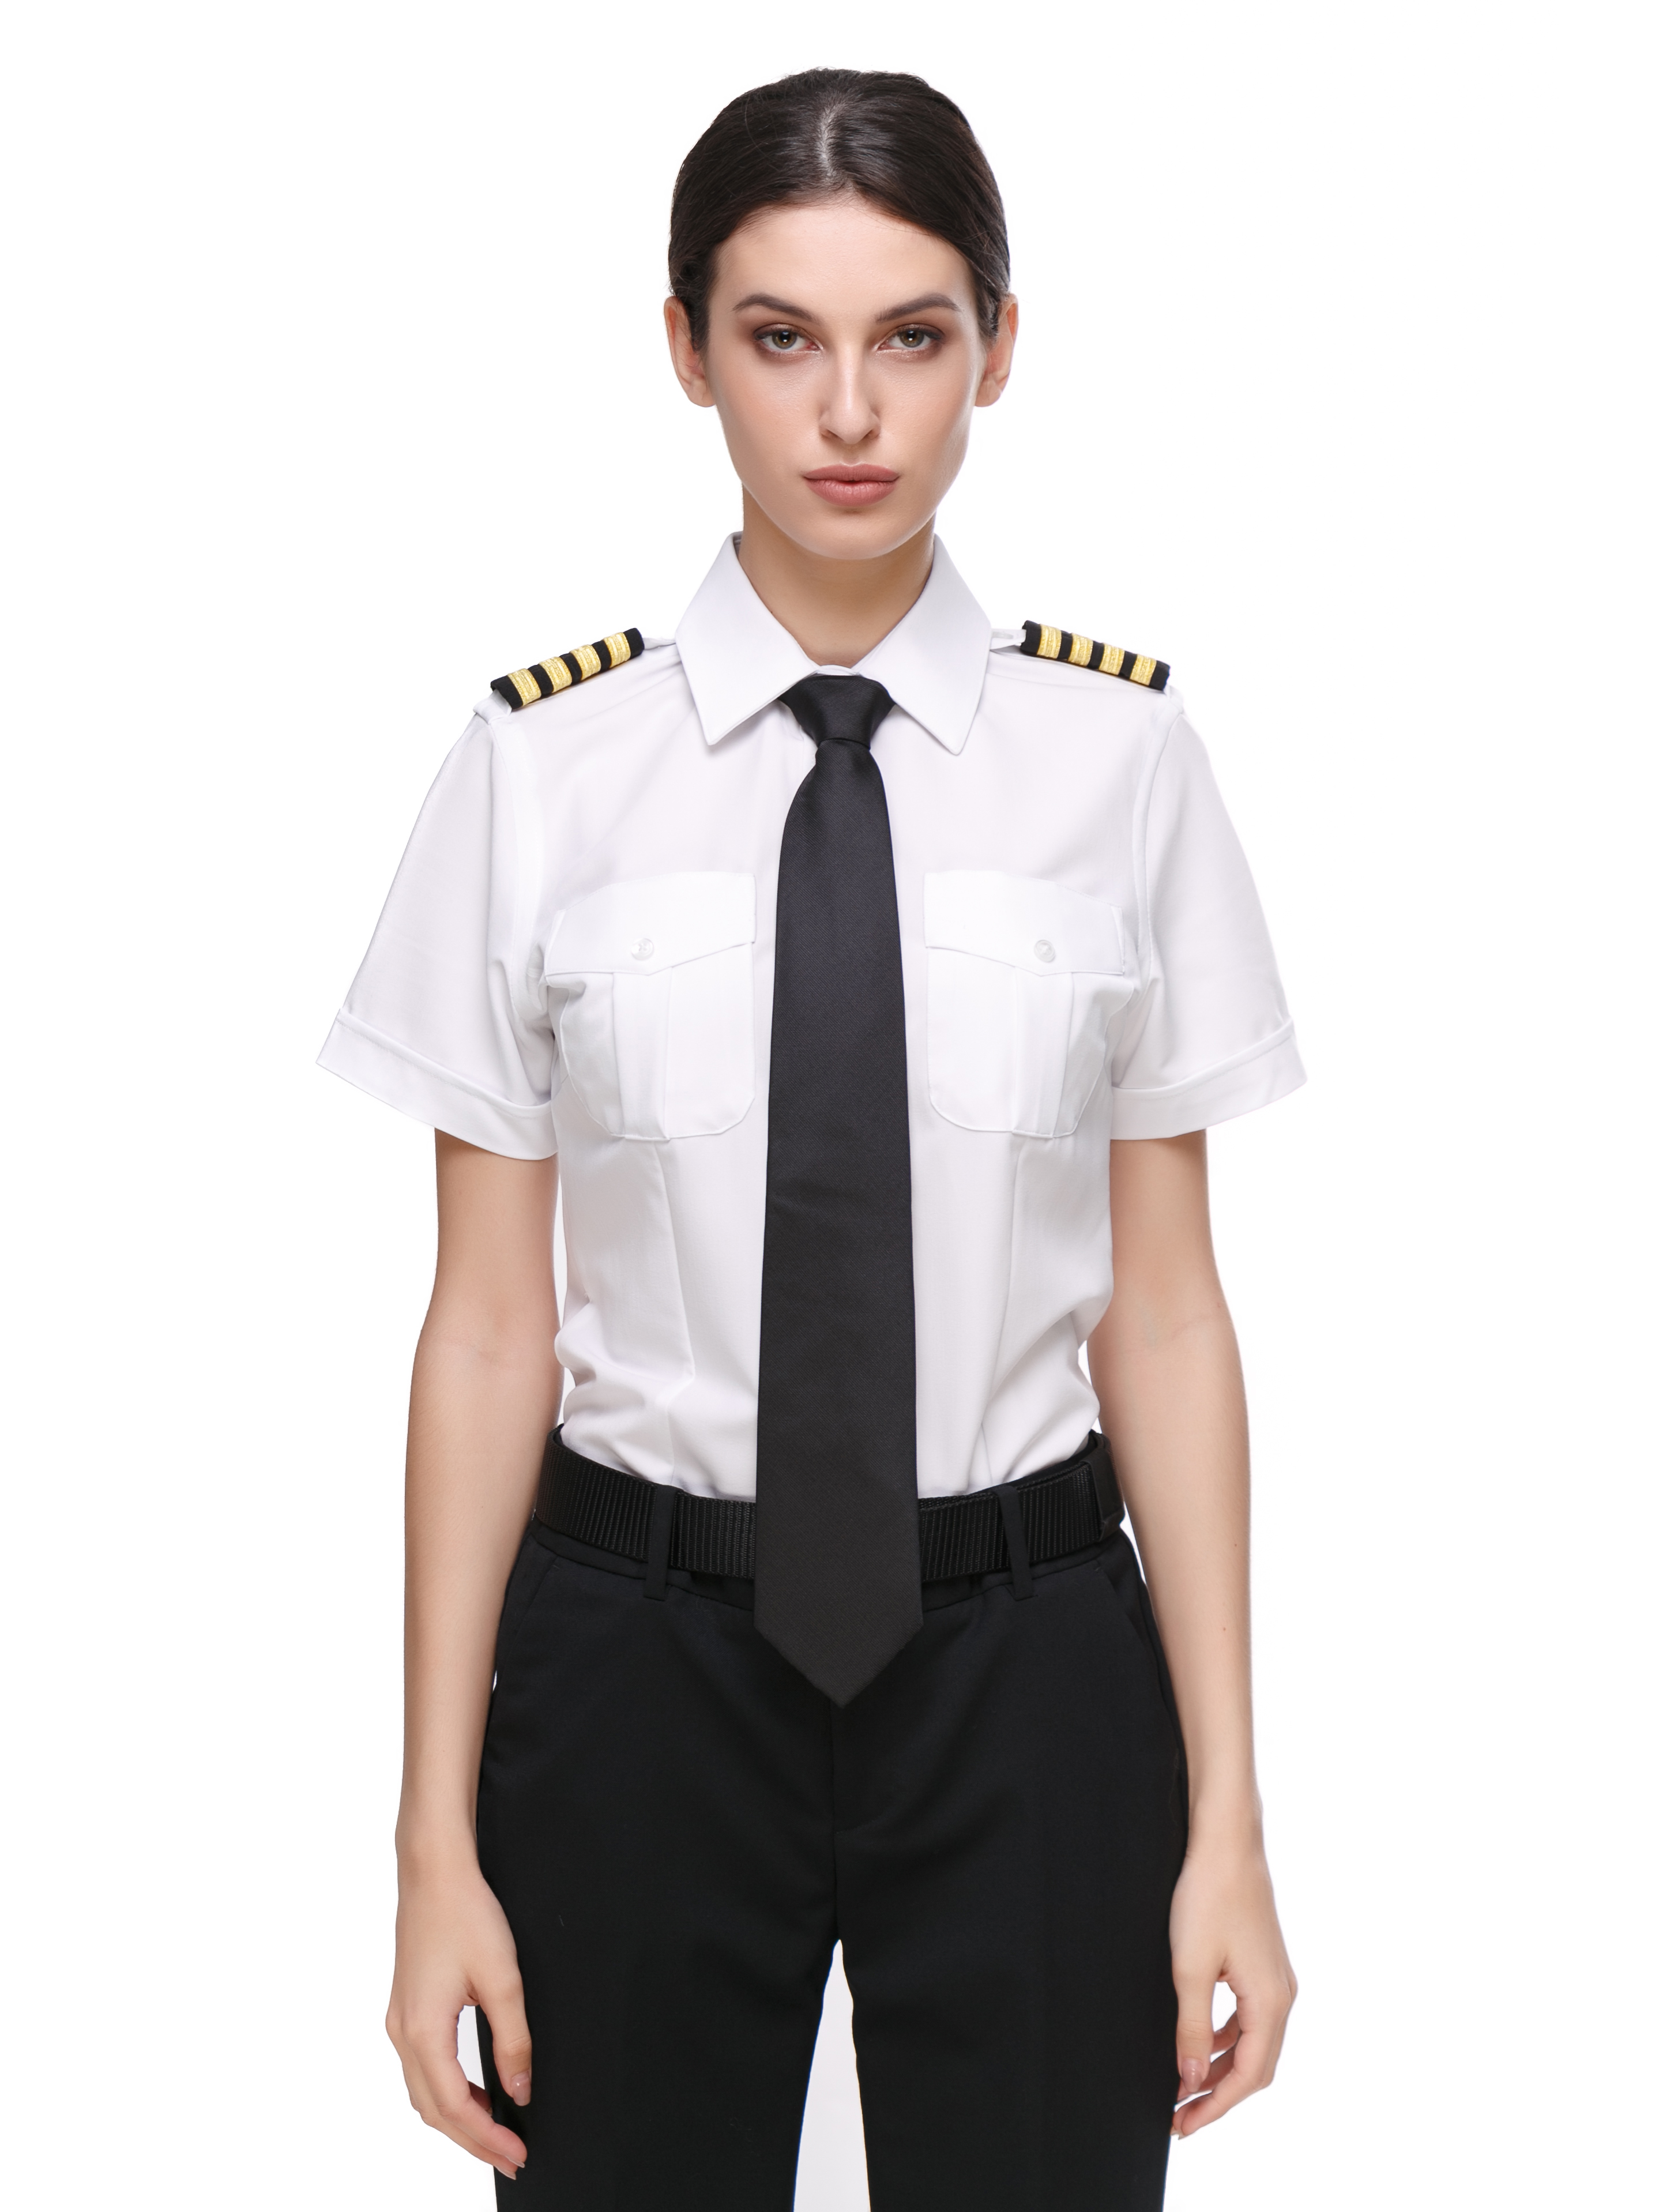 Белая рубашка пилота